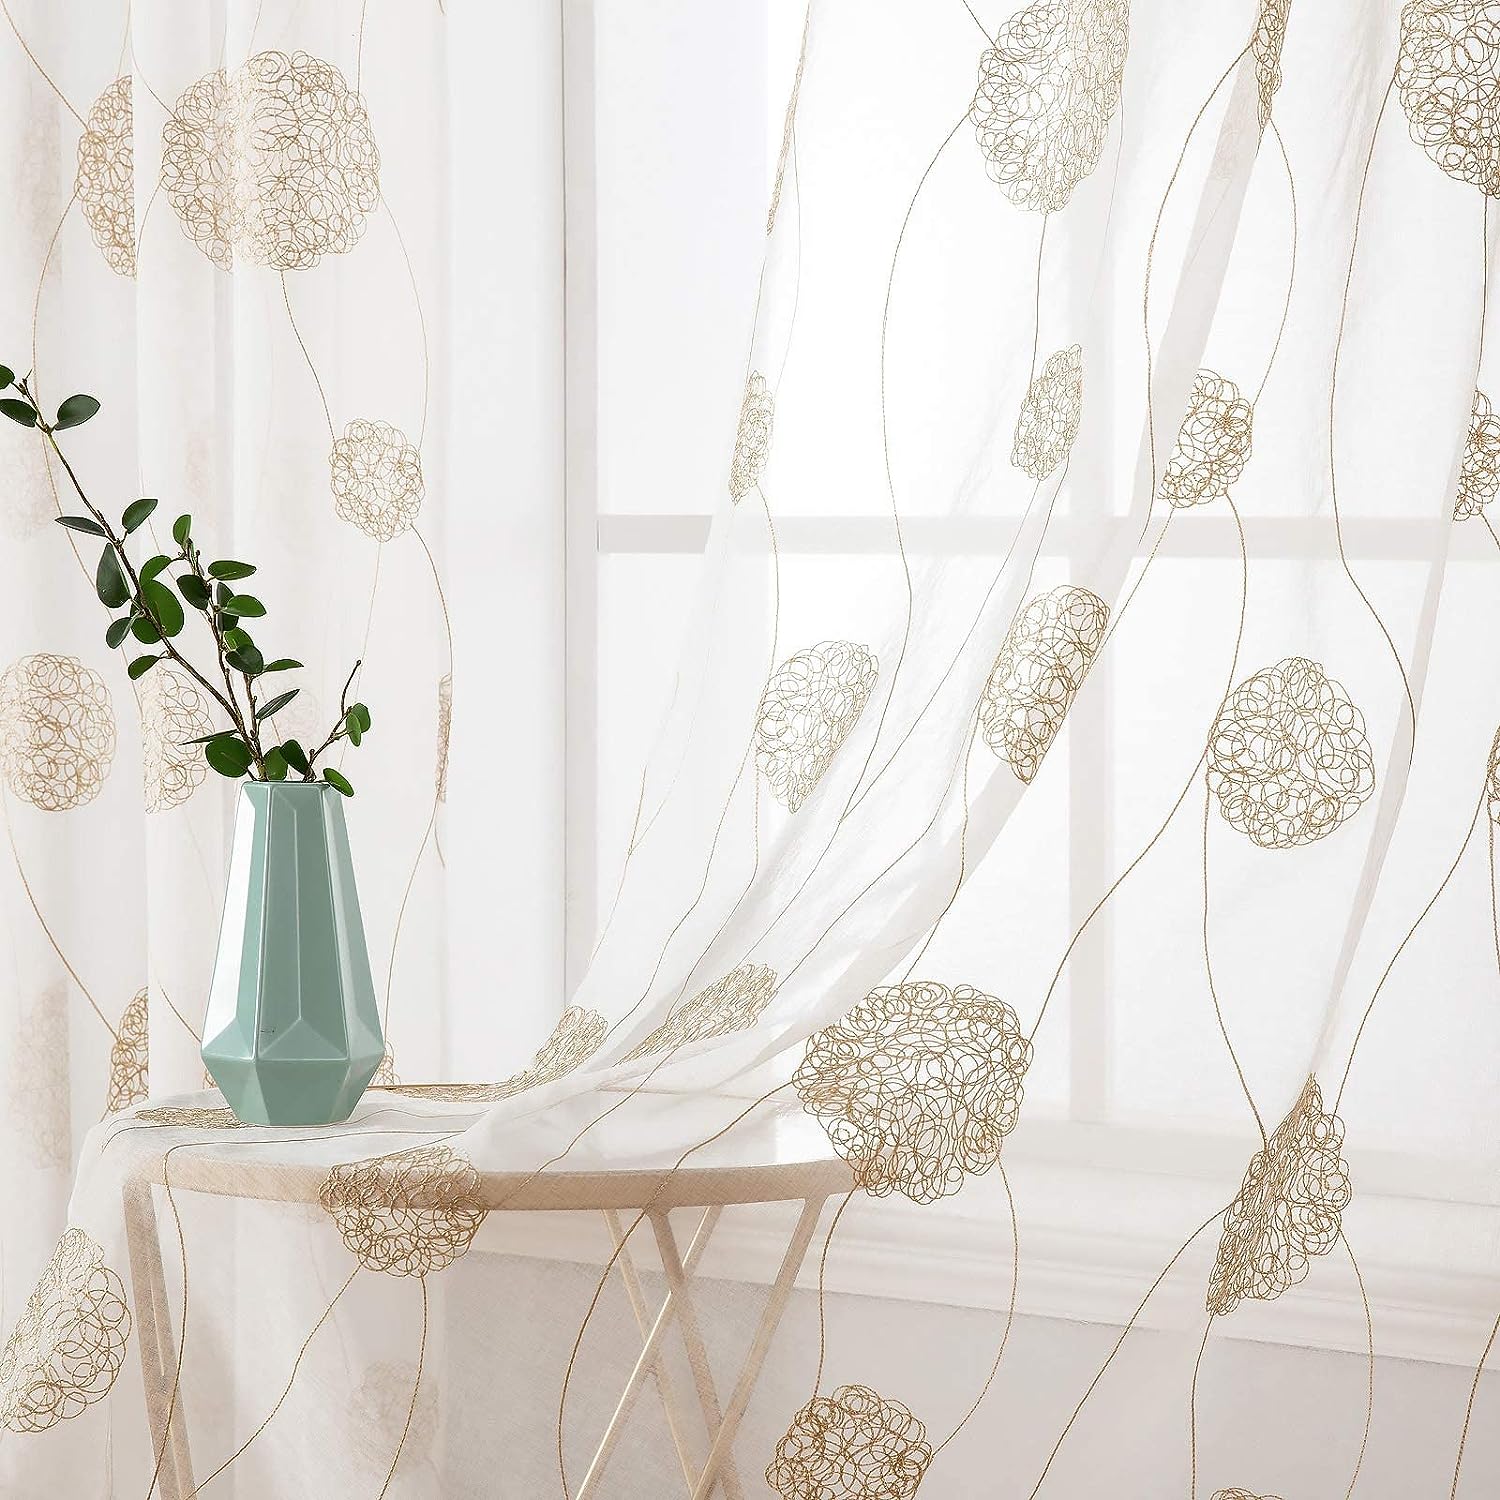 MIULEE Vorhänge mit Florales Stickerei, Gardinen Weiß mit Golden Muste für Wohnzimmer, Schlafzimmer Vorhang Transparent mit Ösen, 2er Set Voile Blumen Durchsichtig Vorhänge, Jeder H 225 X B 140cm